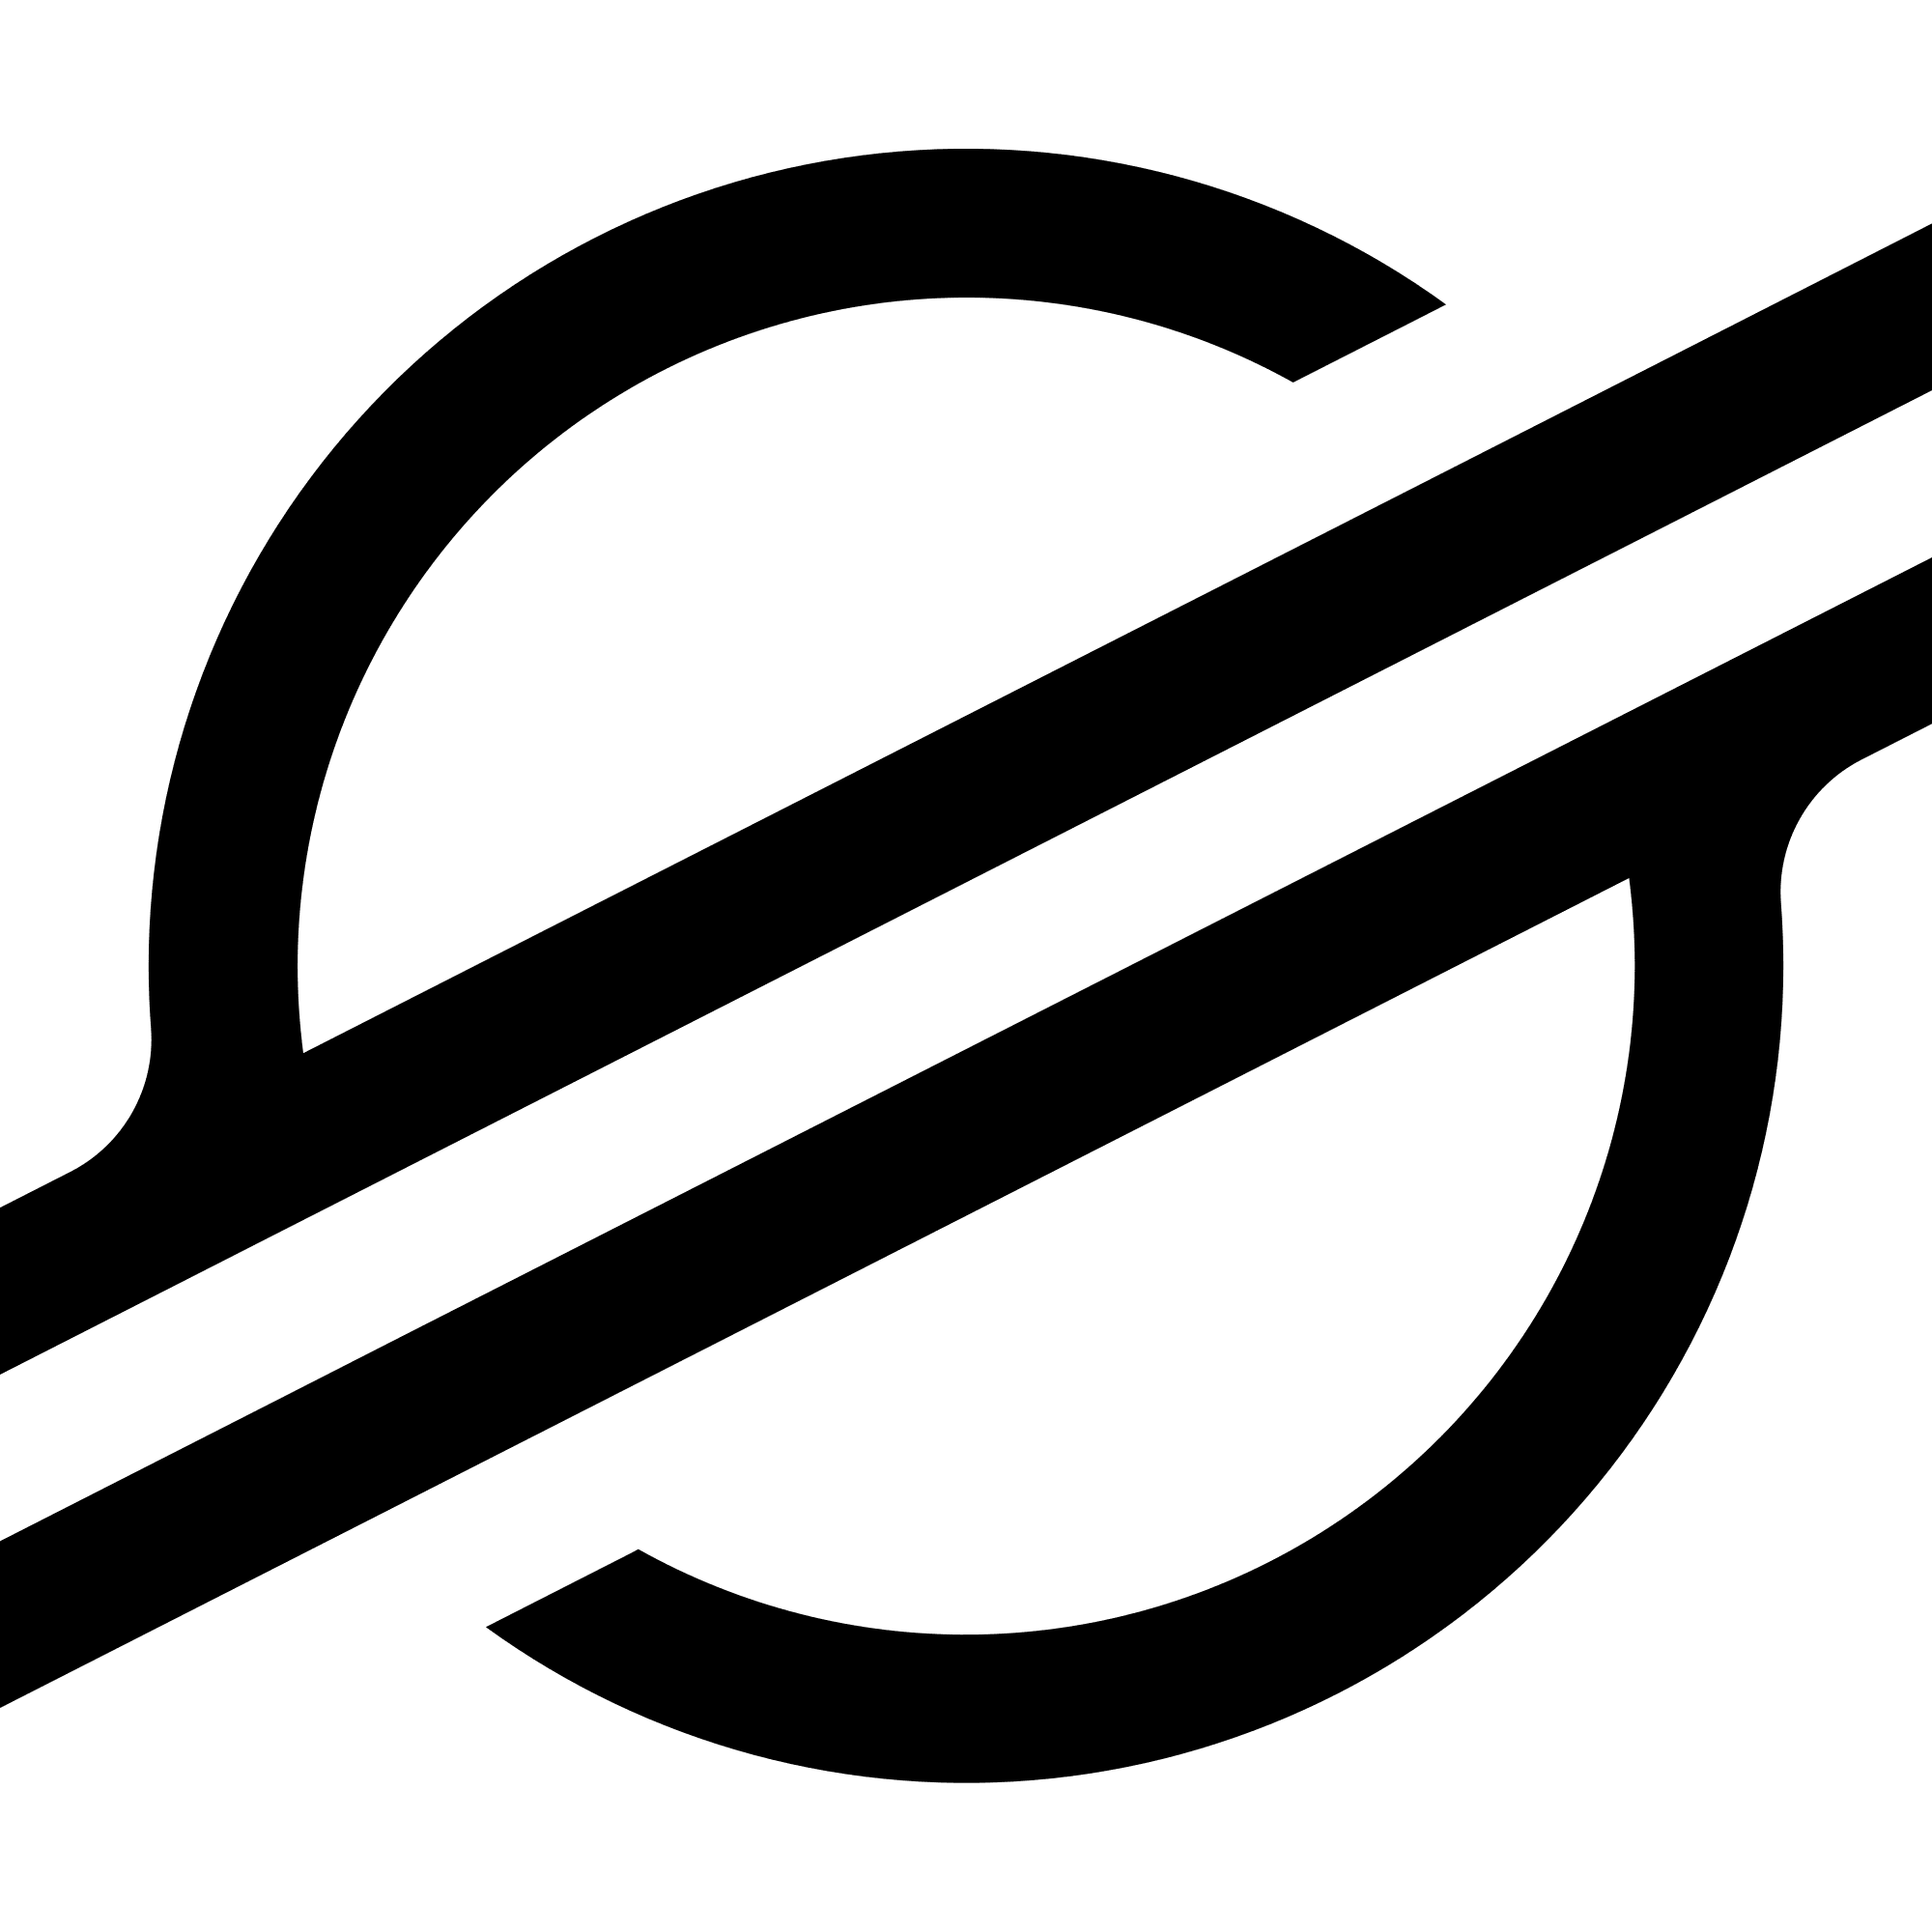 Stellar logo in png format